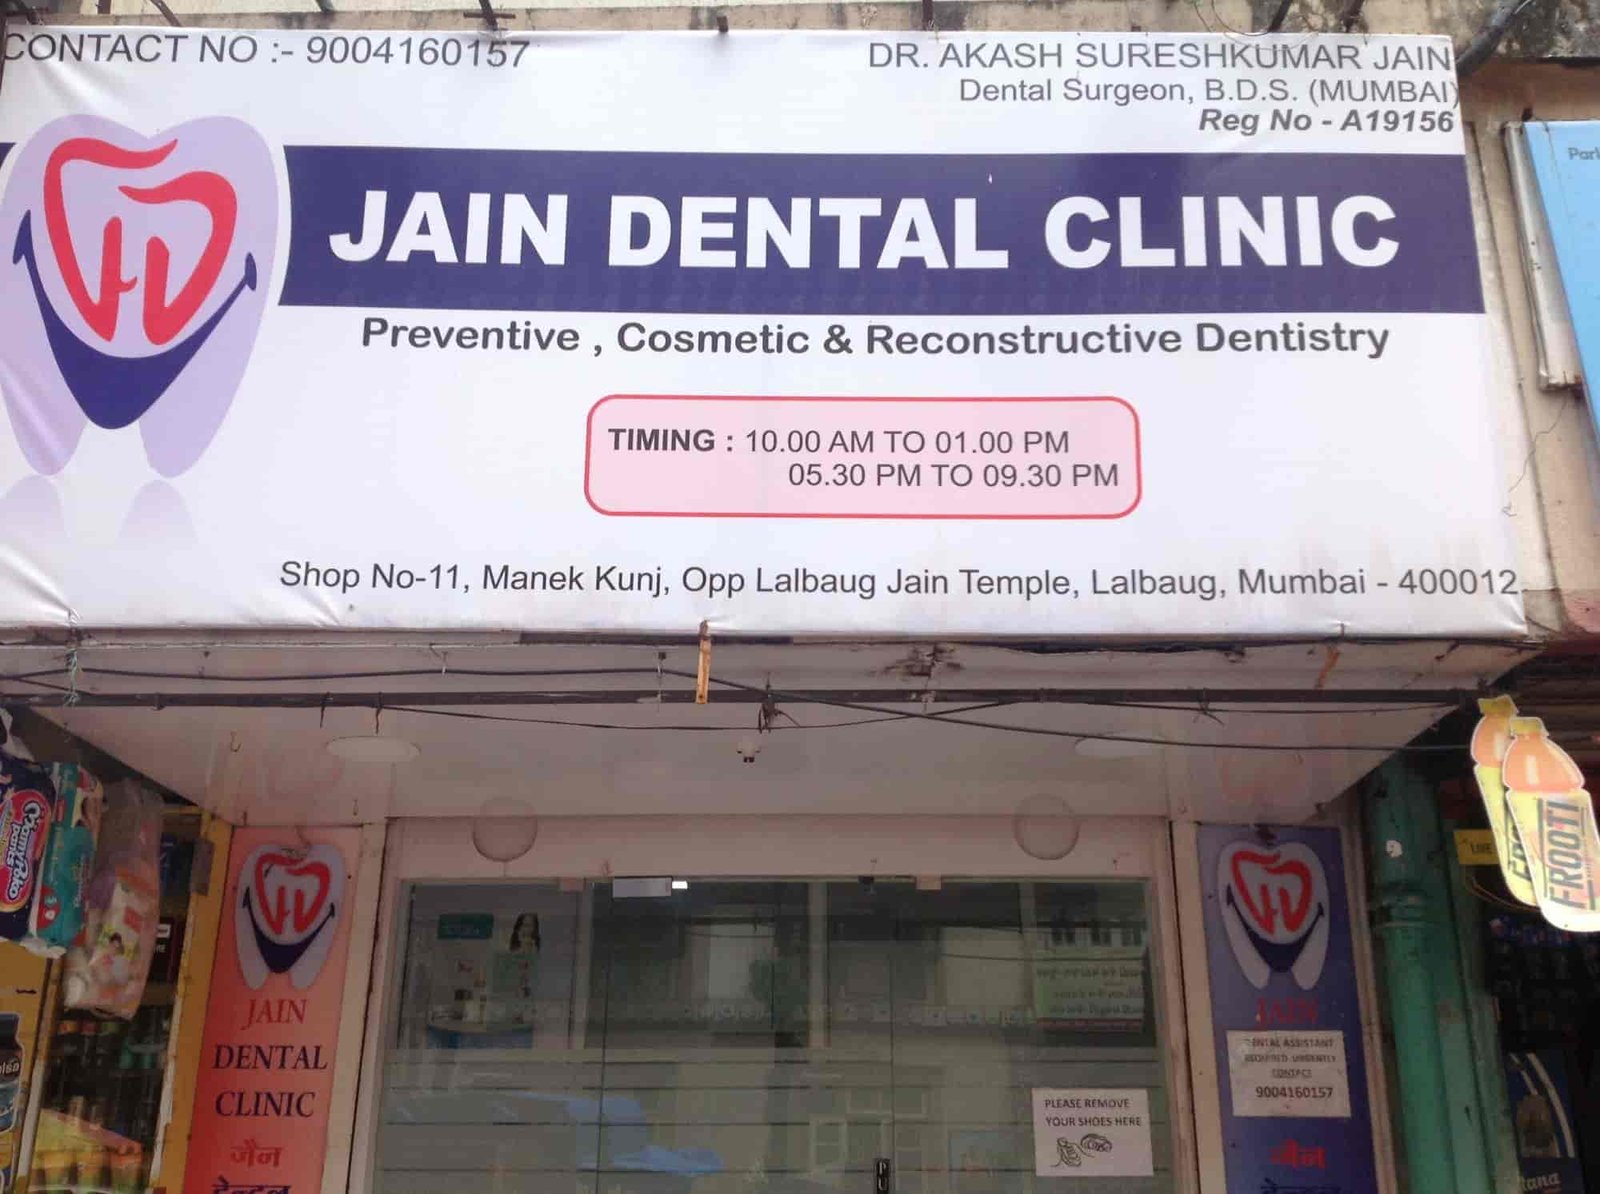 Jain Dental Clinic